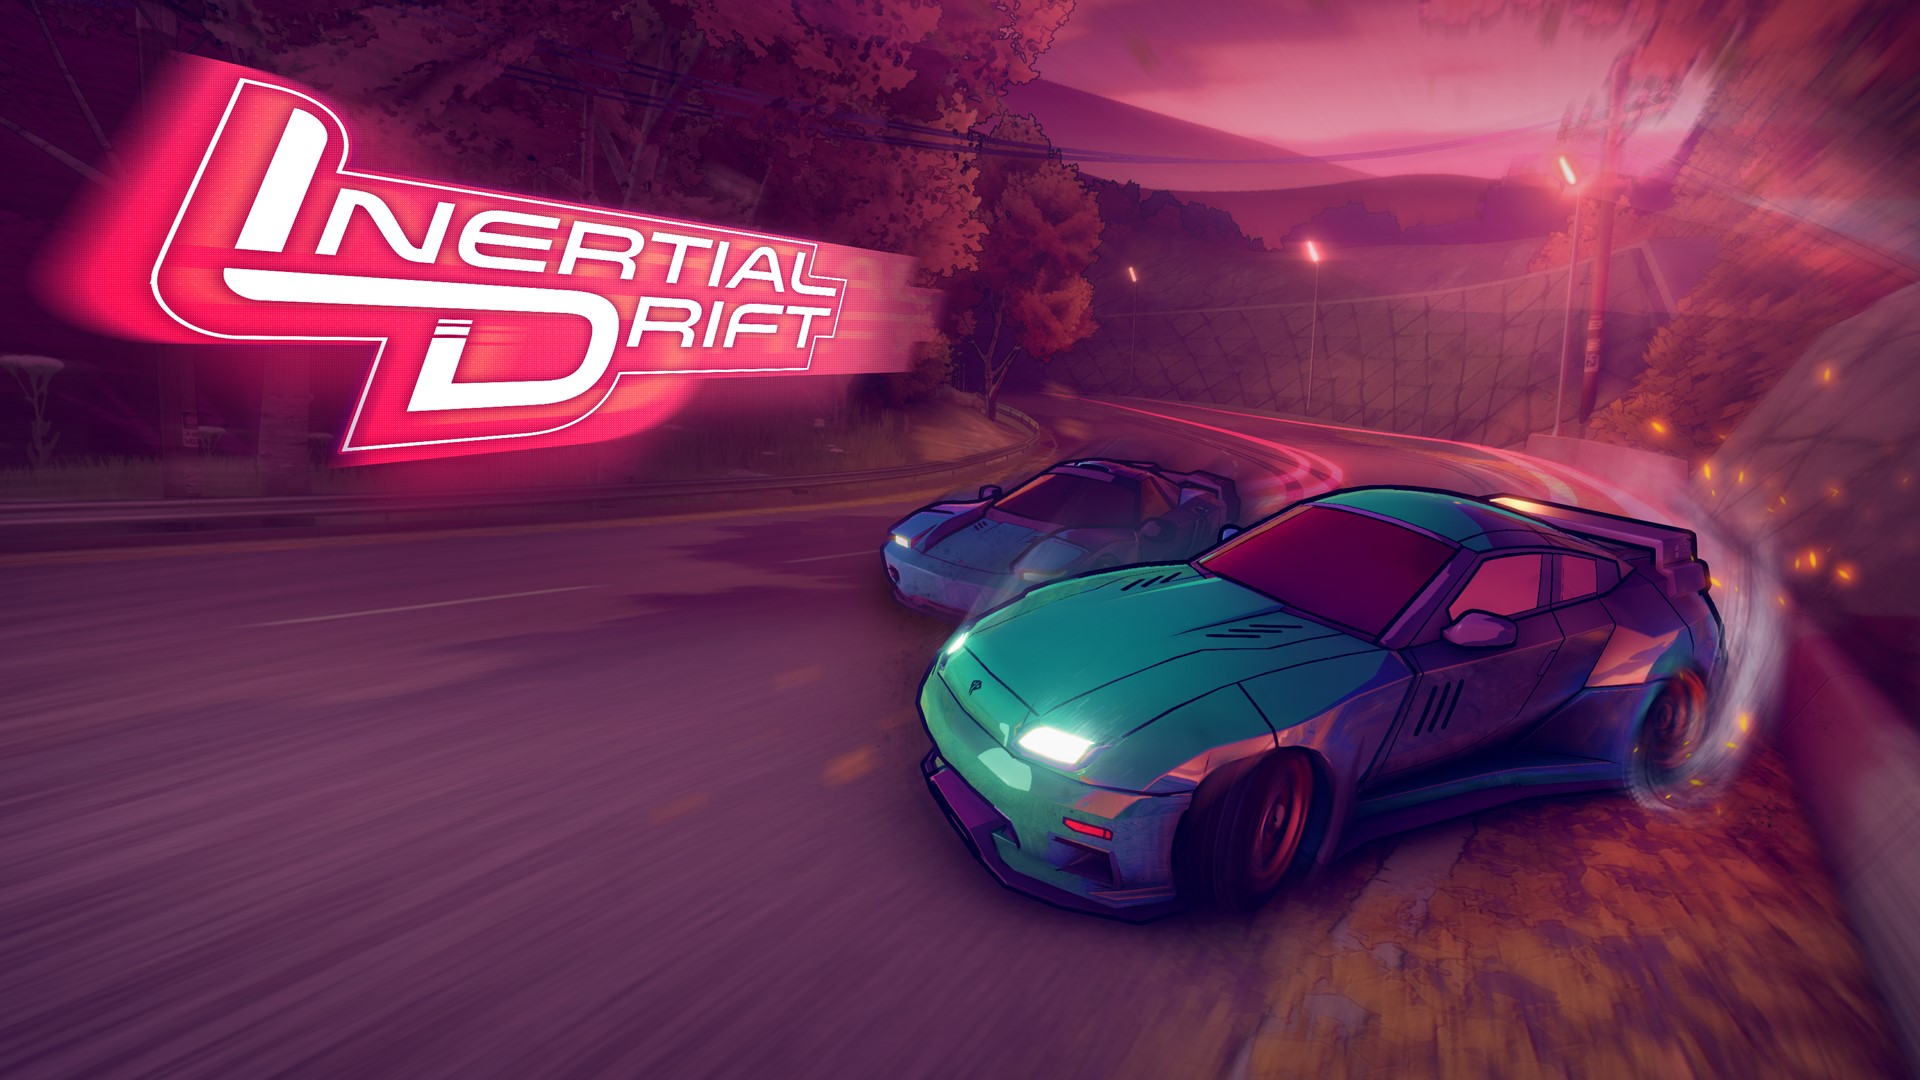 Inertial Drift Review Godisageek Com - roblox drift society drifing game review